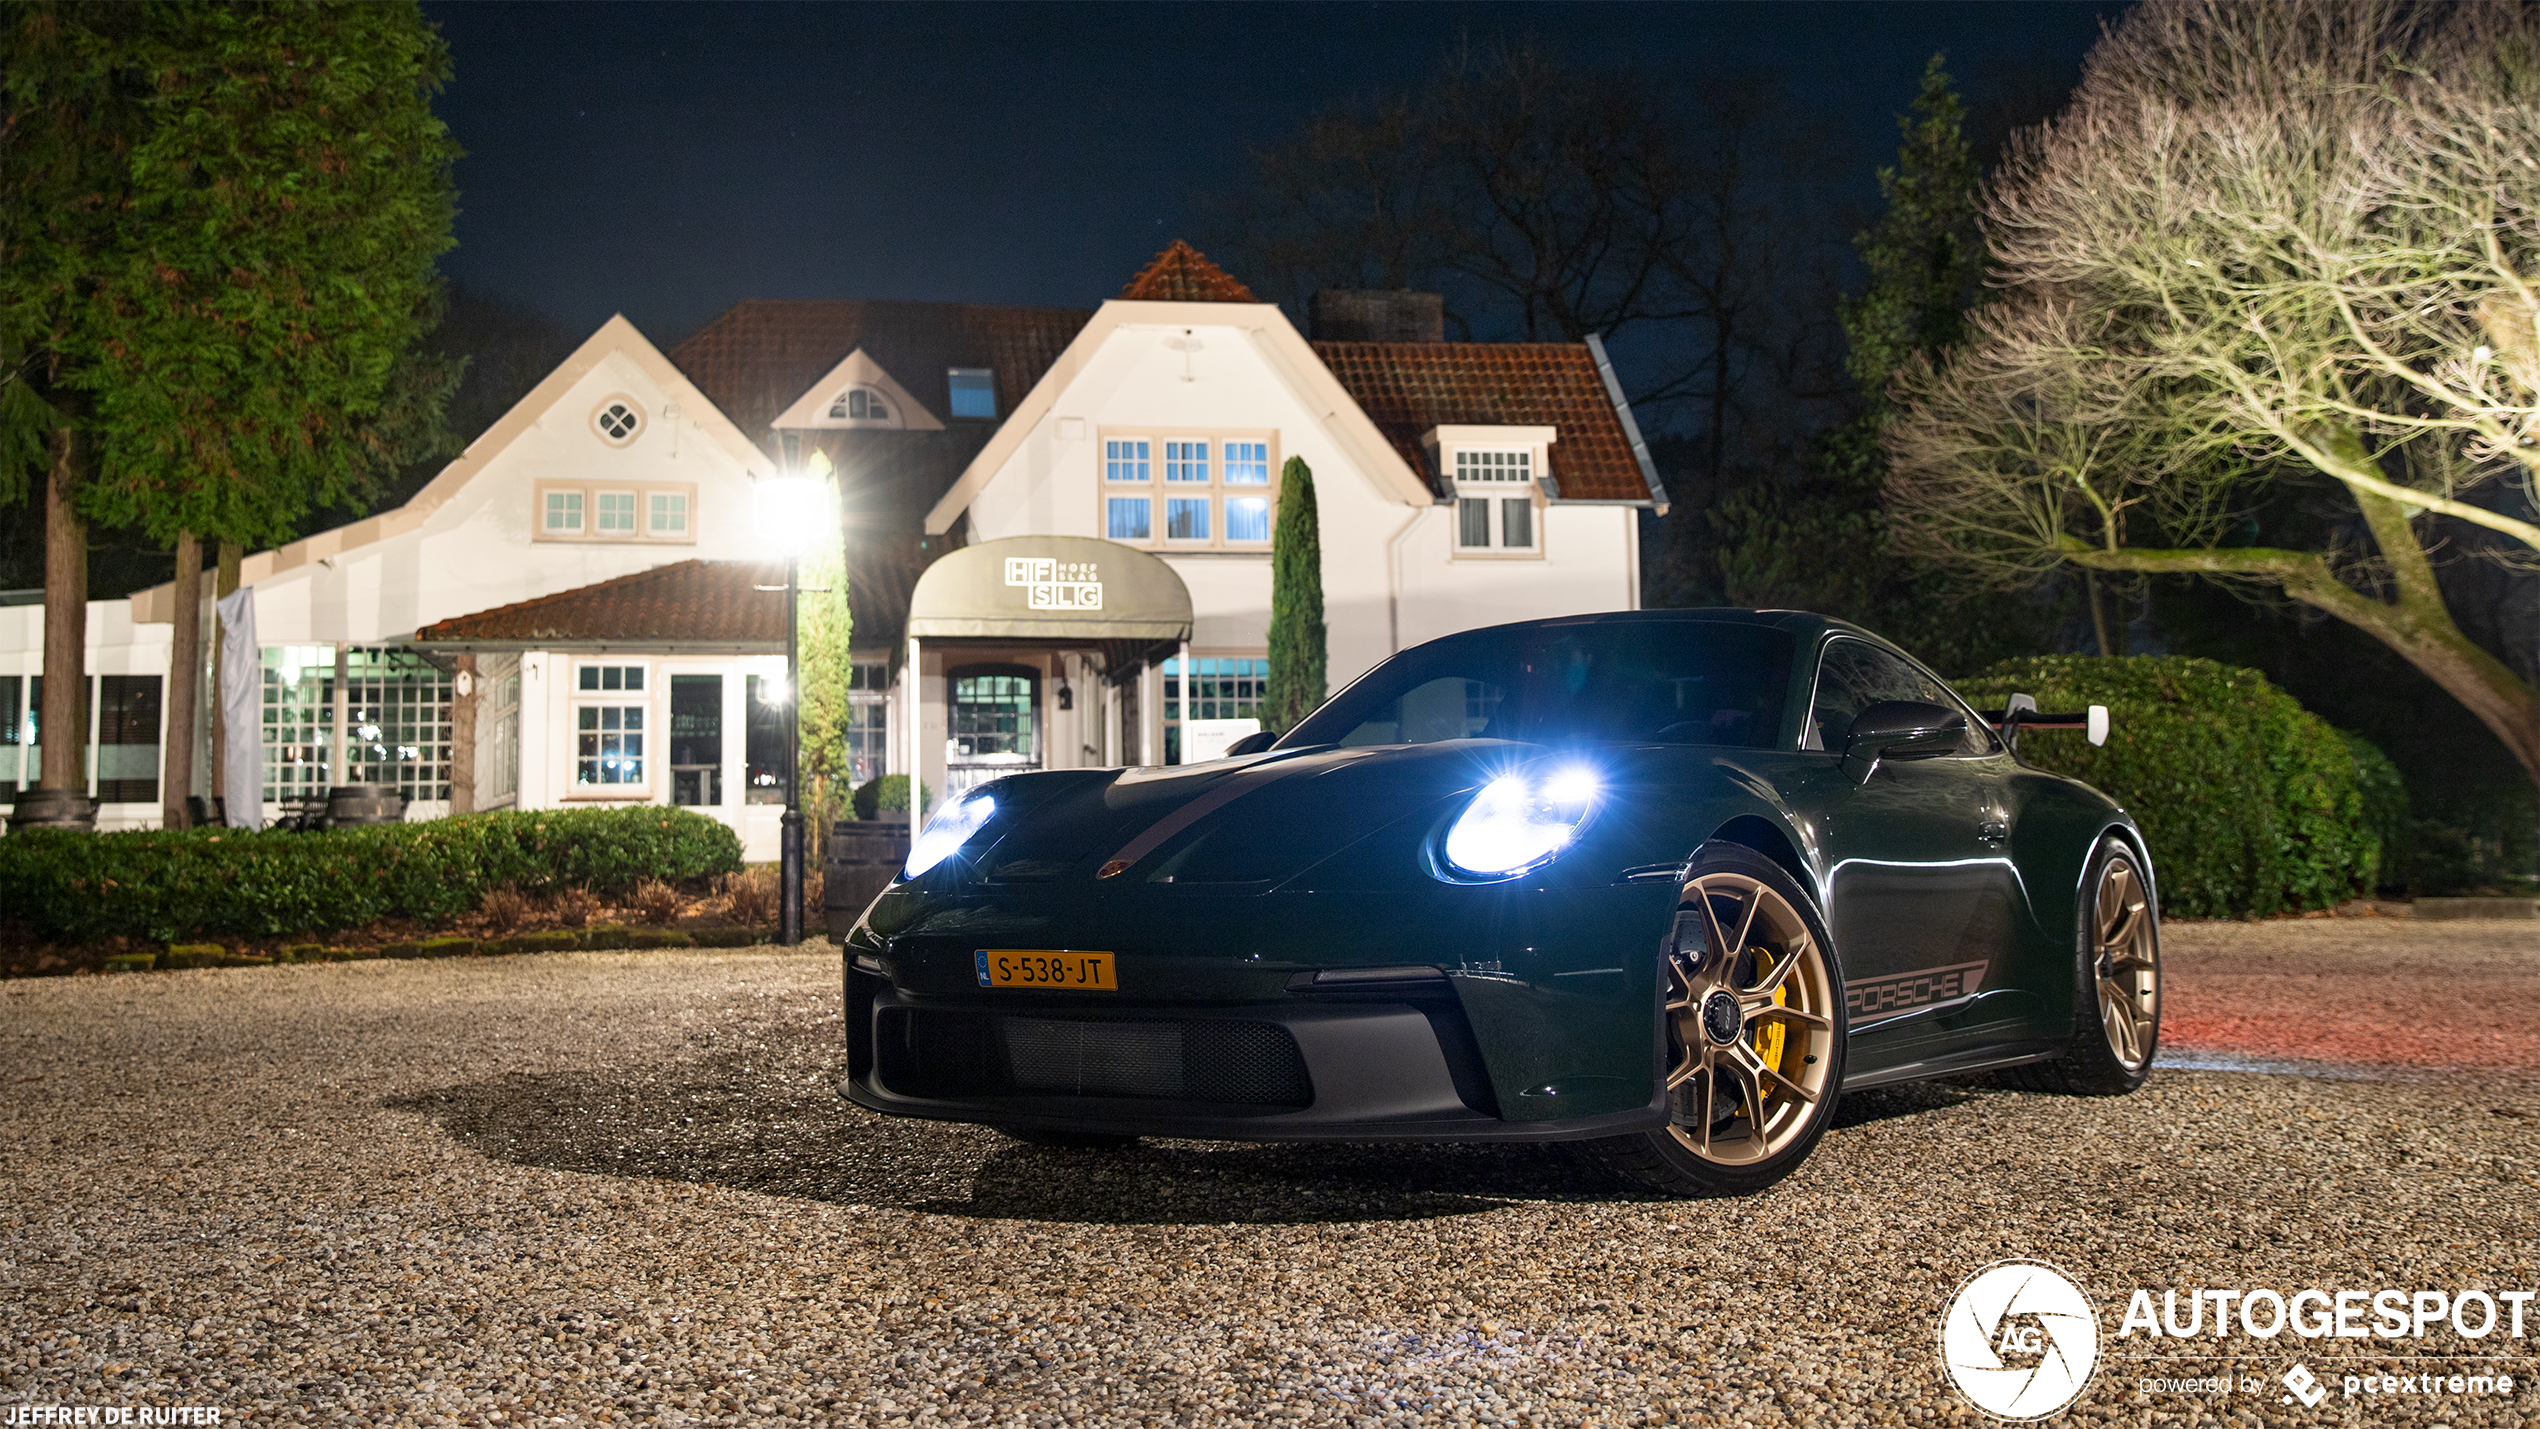 Nachtelijke fotoshoot met Porsche GT3